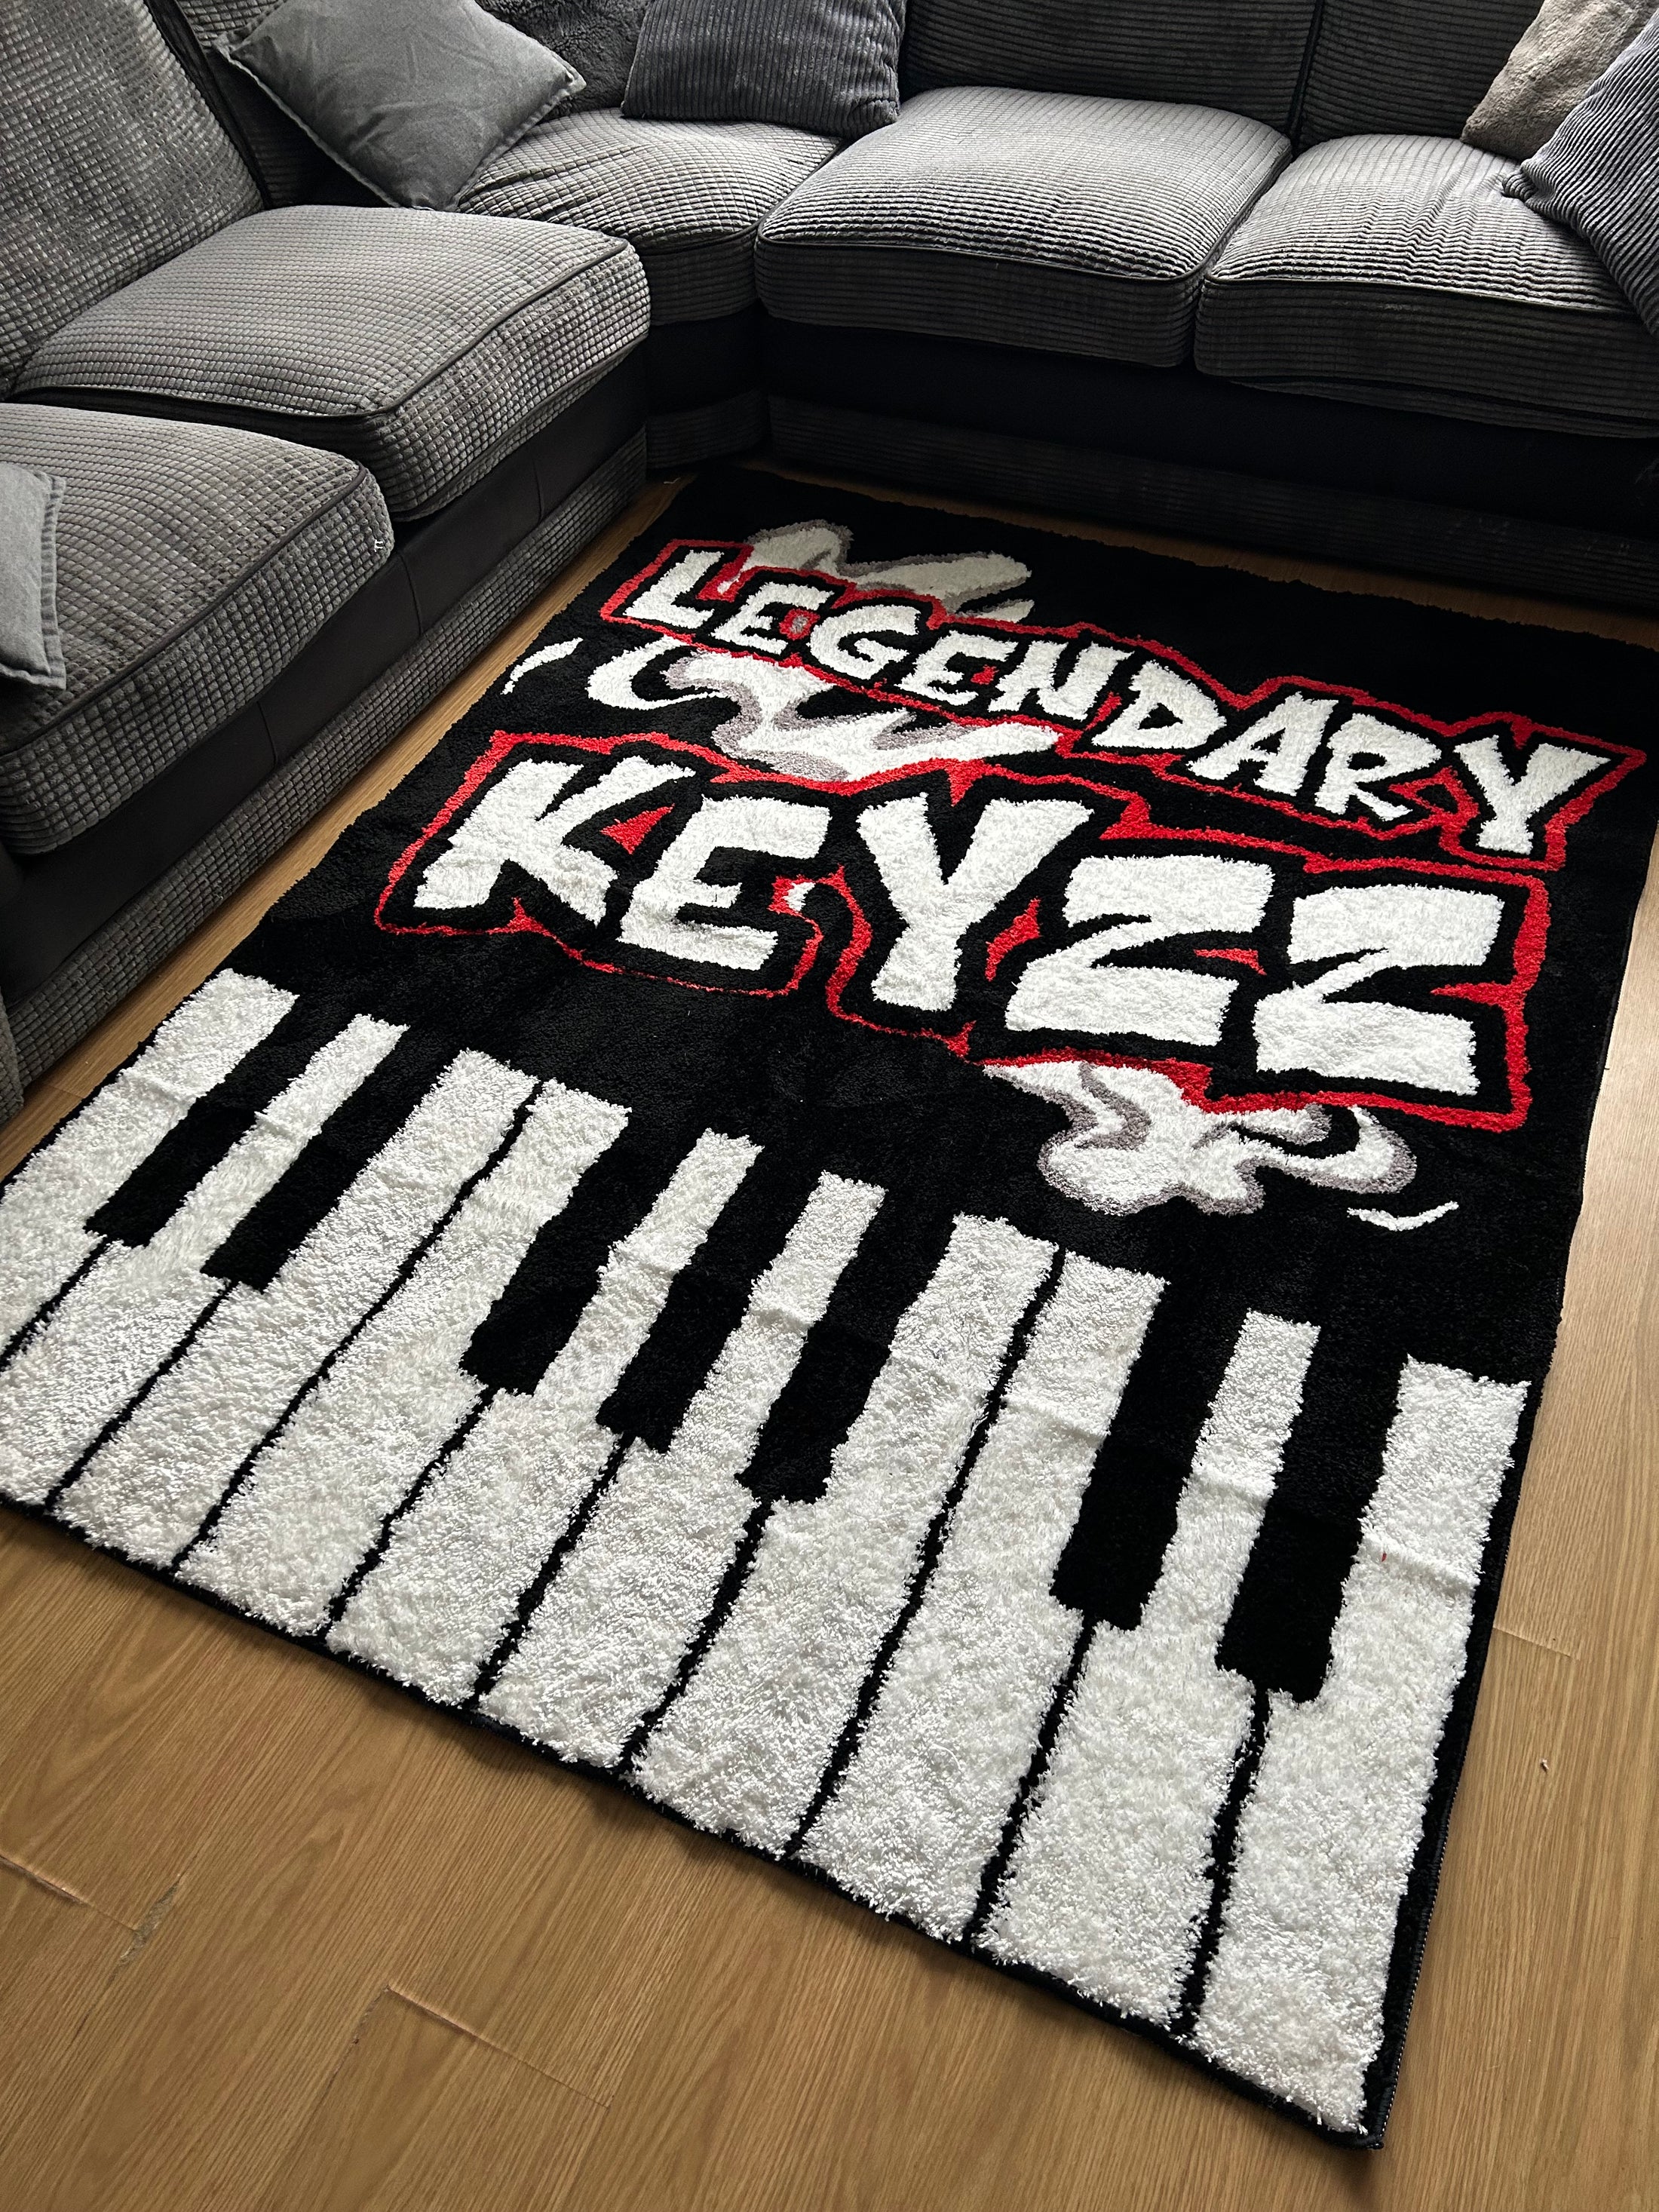 Premium Legendary Keyzz Rug (200x300cm)